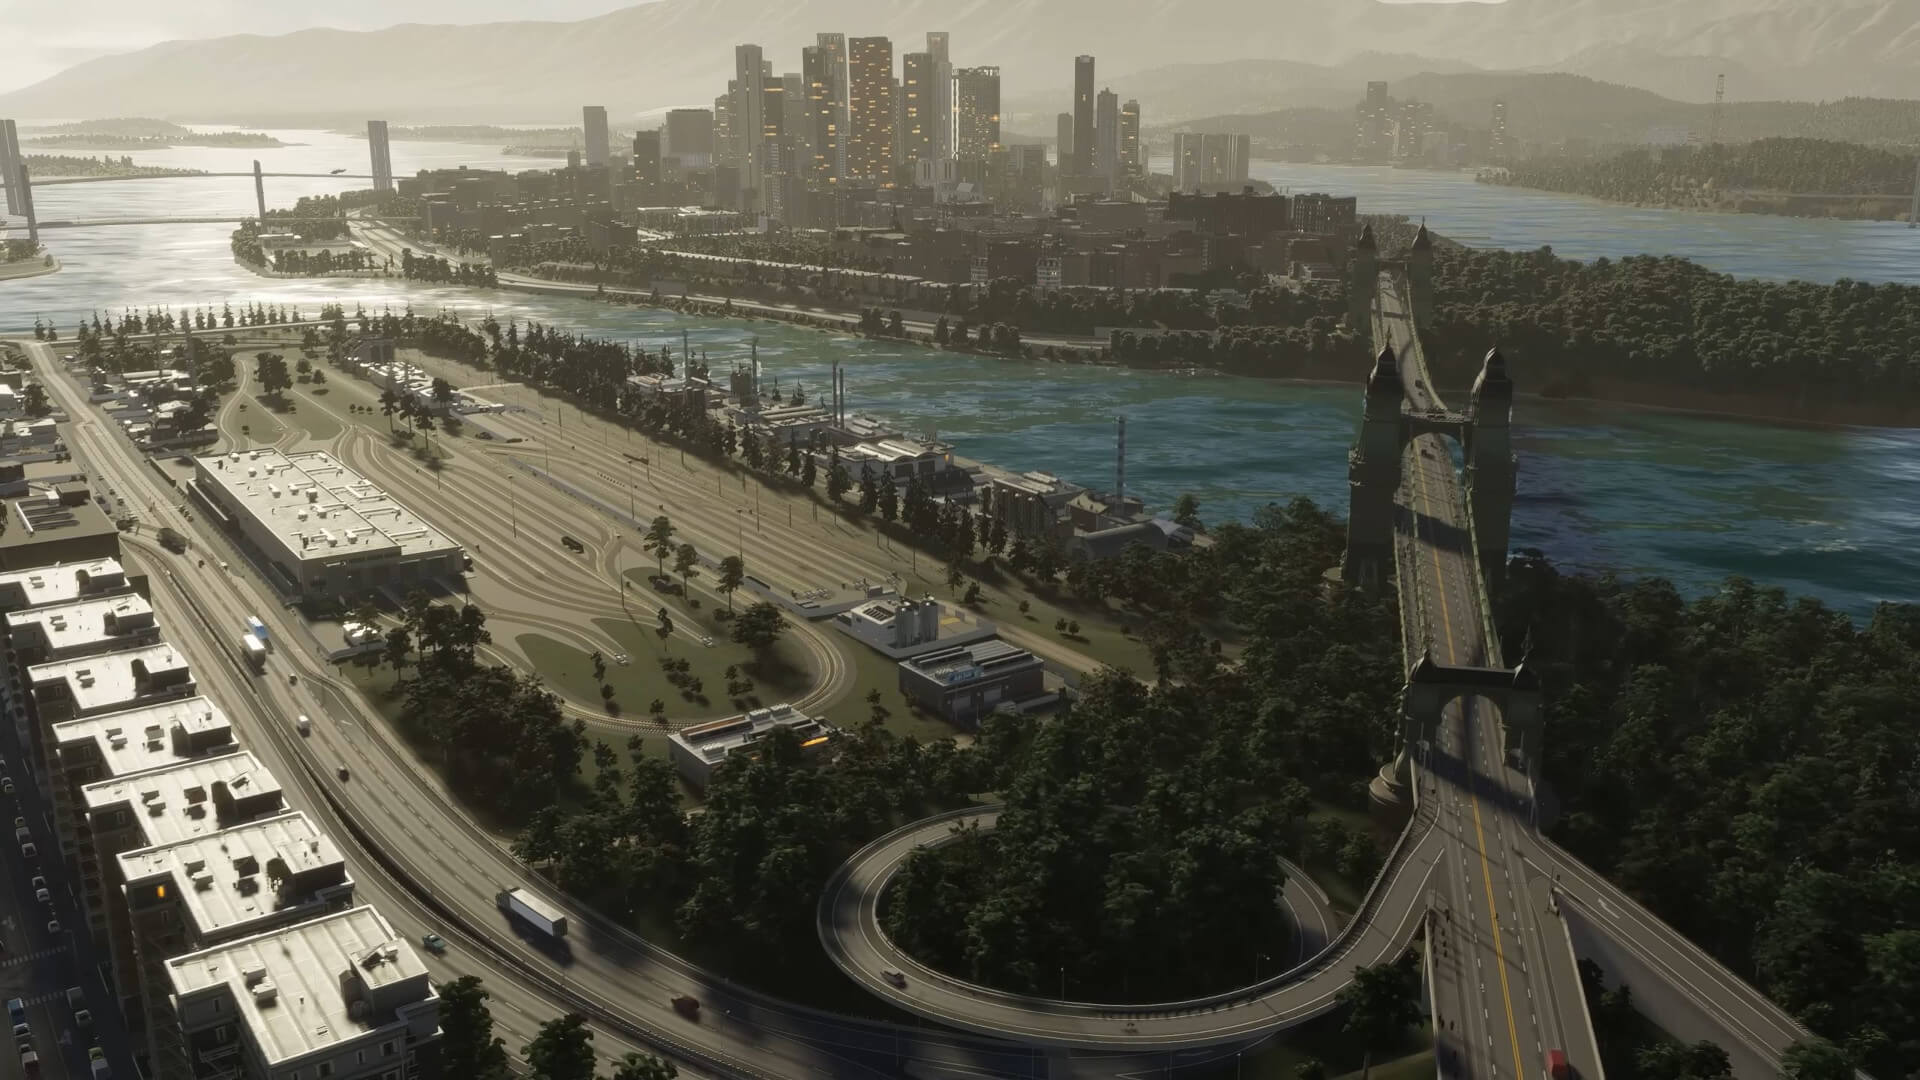 Обновление Cities: Skylines 2 обеспечивает поддержку суперразрешения Nvidia DLSS и множество исправлений ошибок